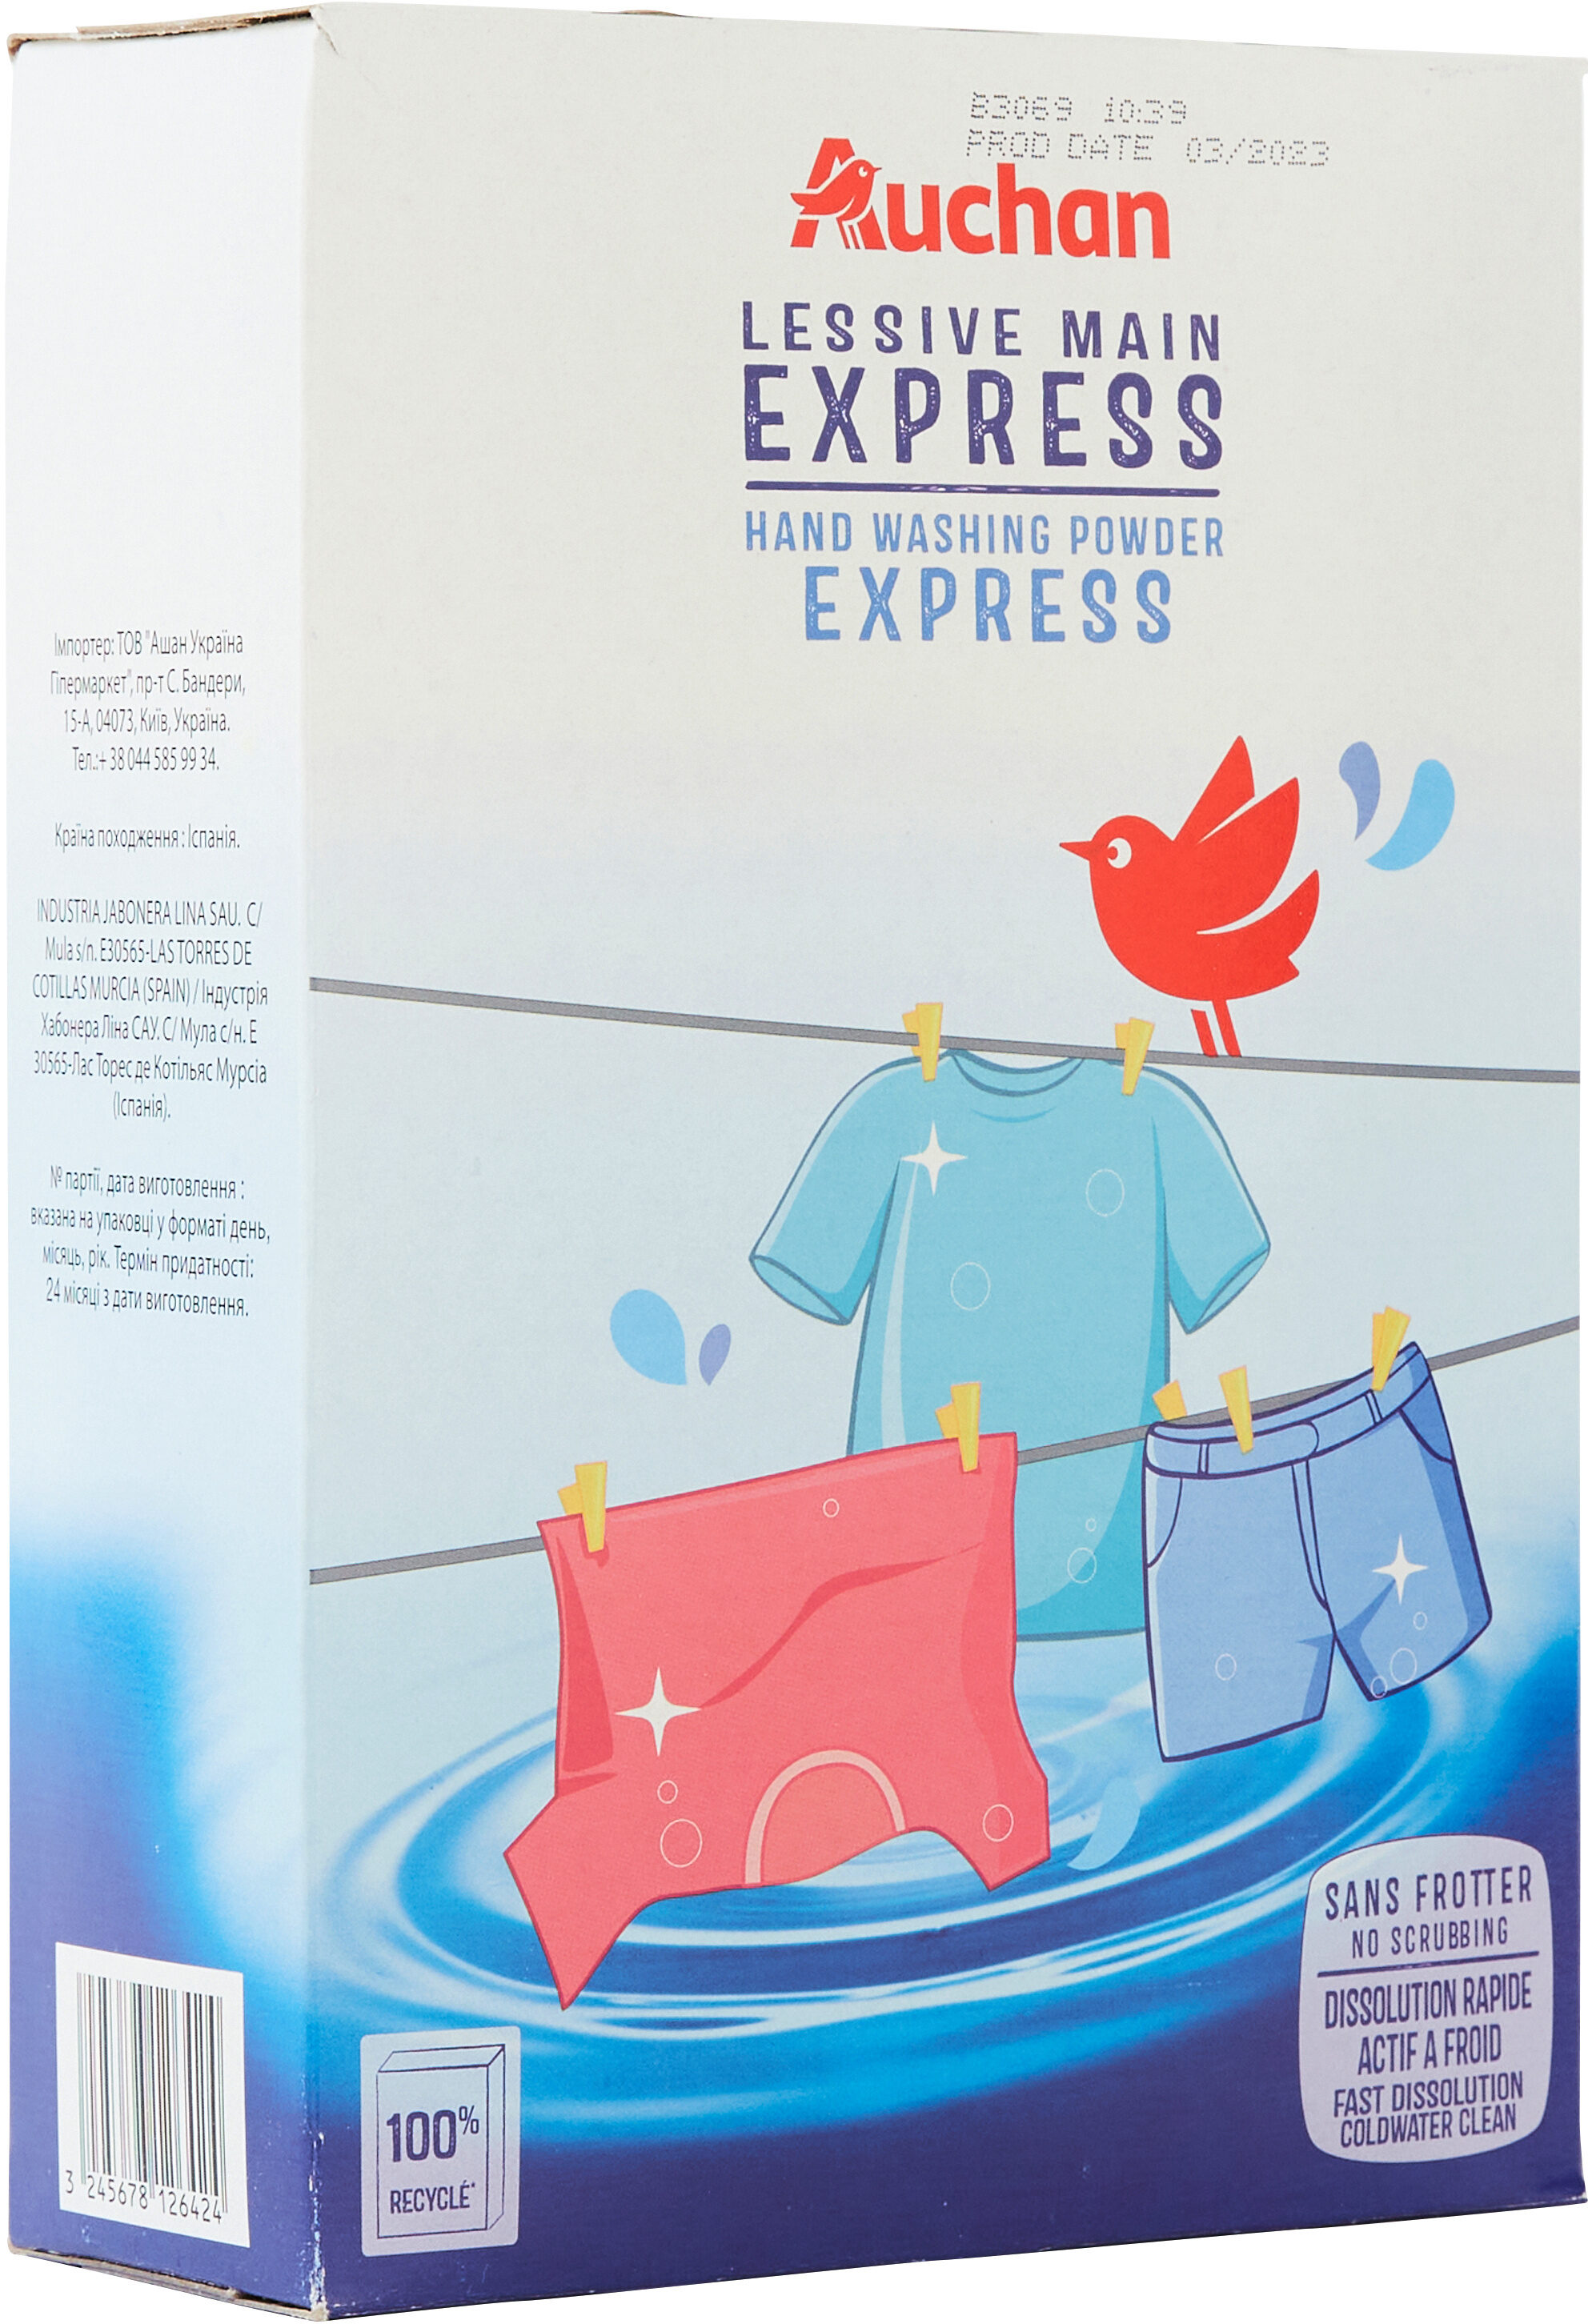 Auchan Lessive main Express - Produit - fr